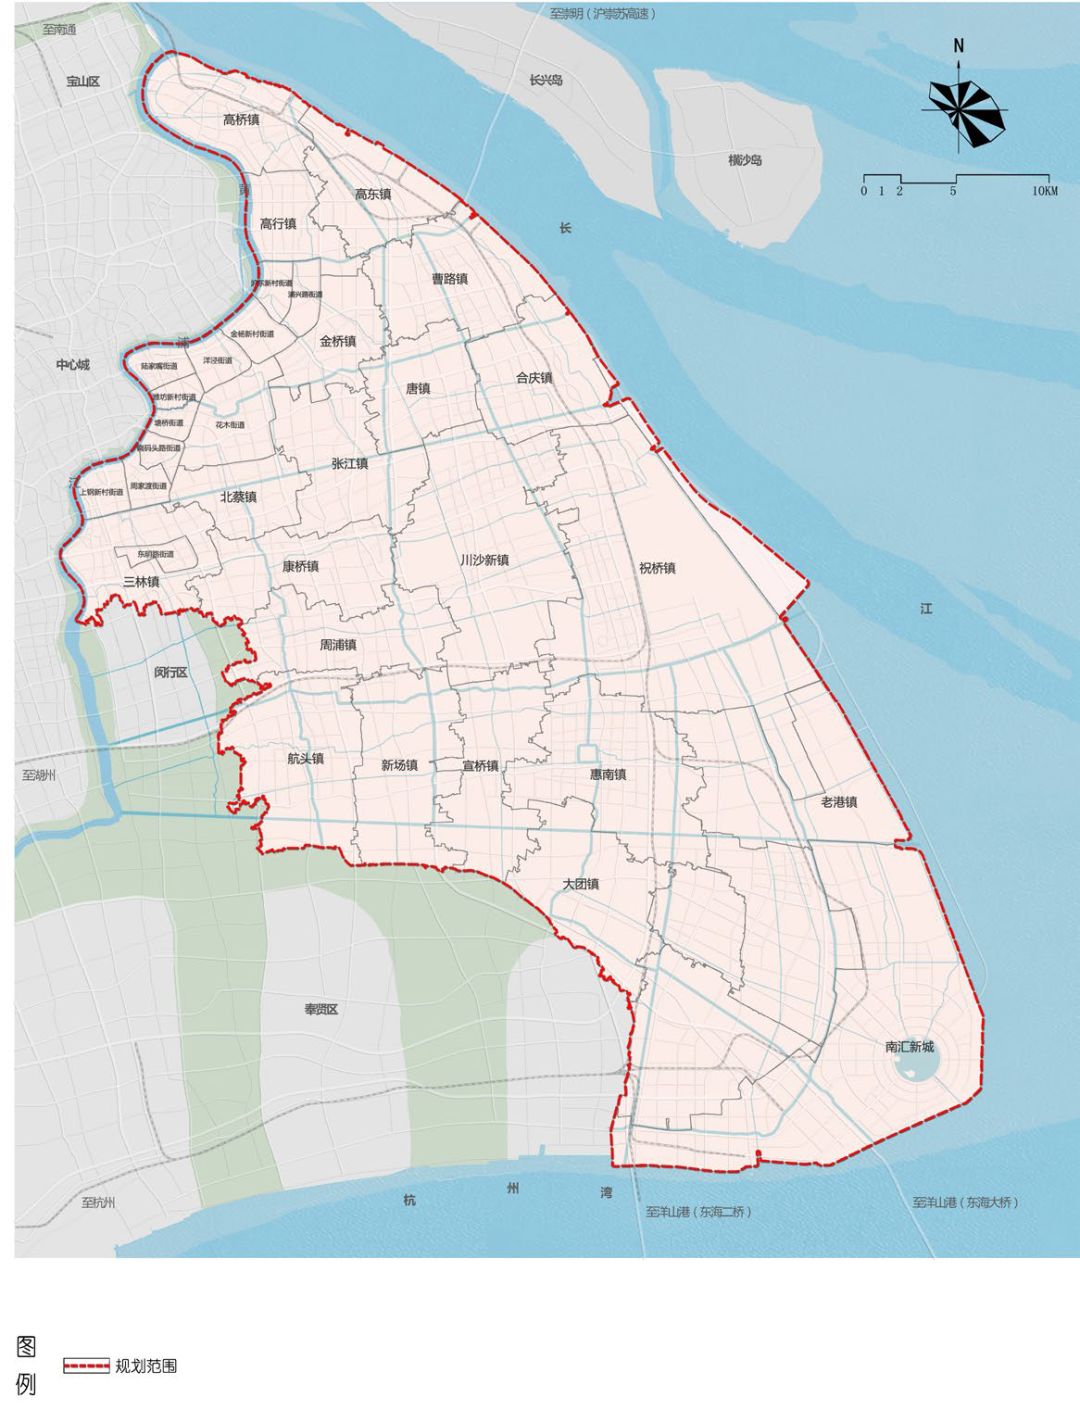 重磅浦东新区国土空间总体规划20172035公布快来看看咱周浦的发展定位